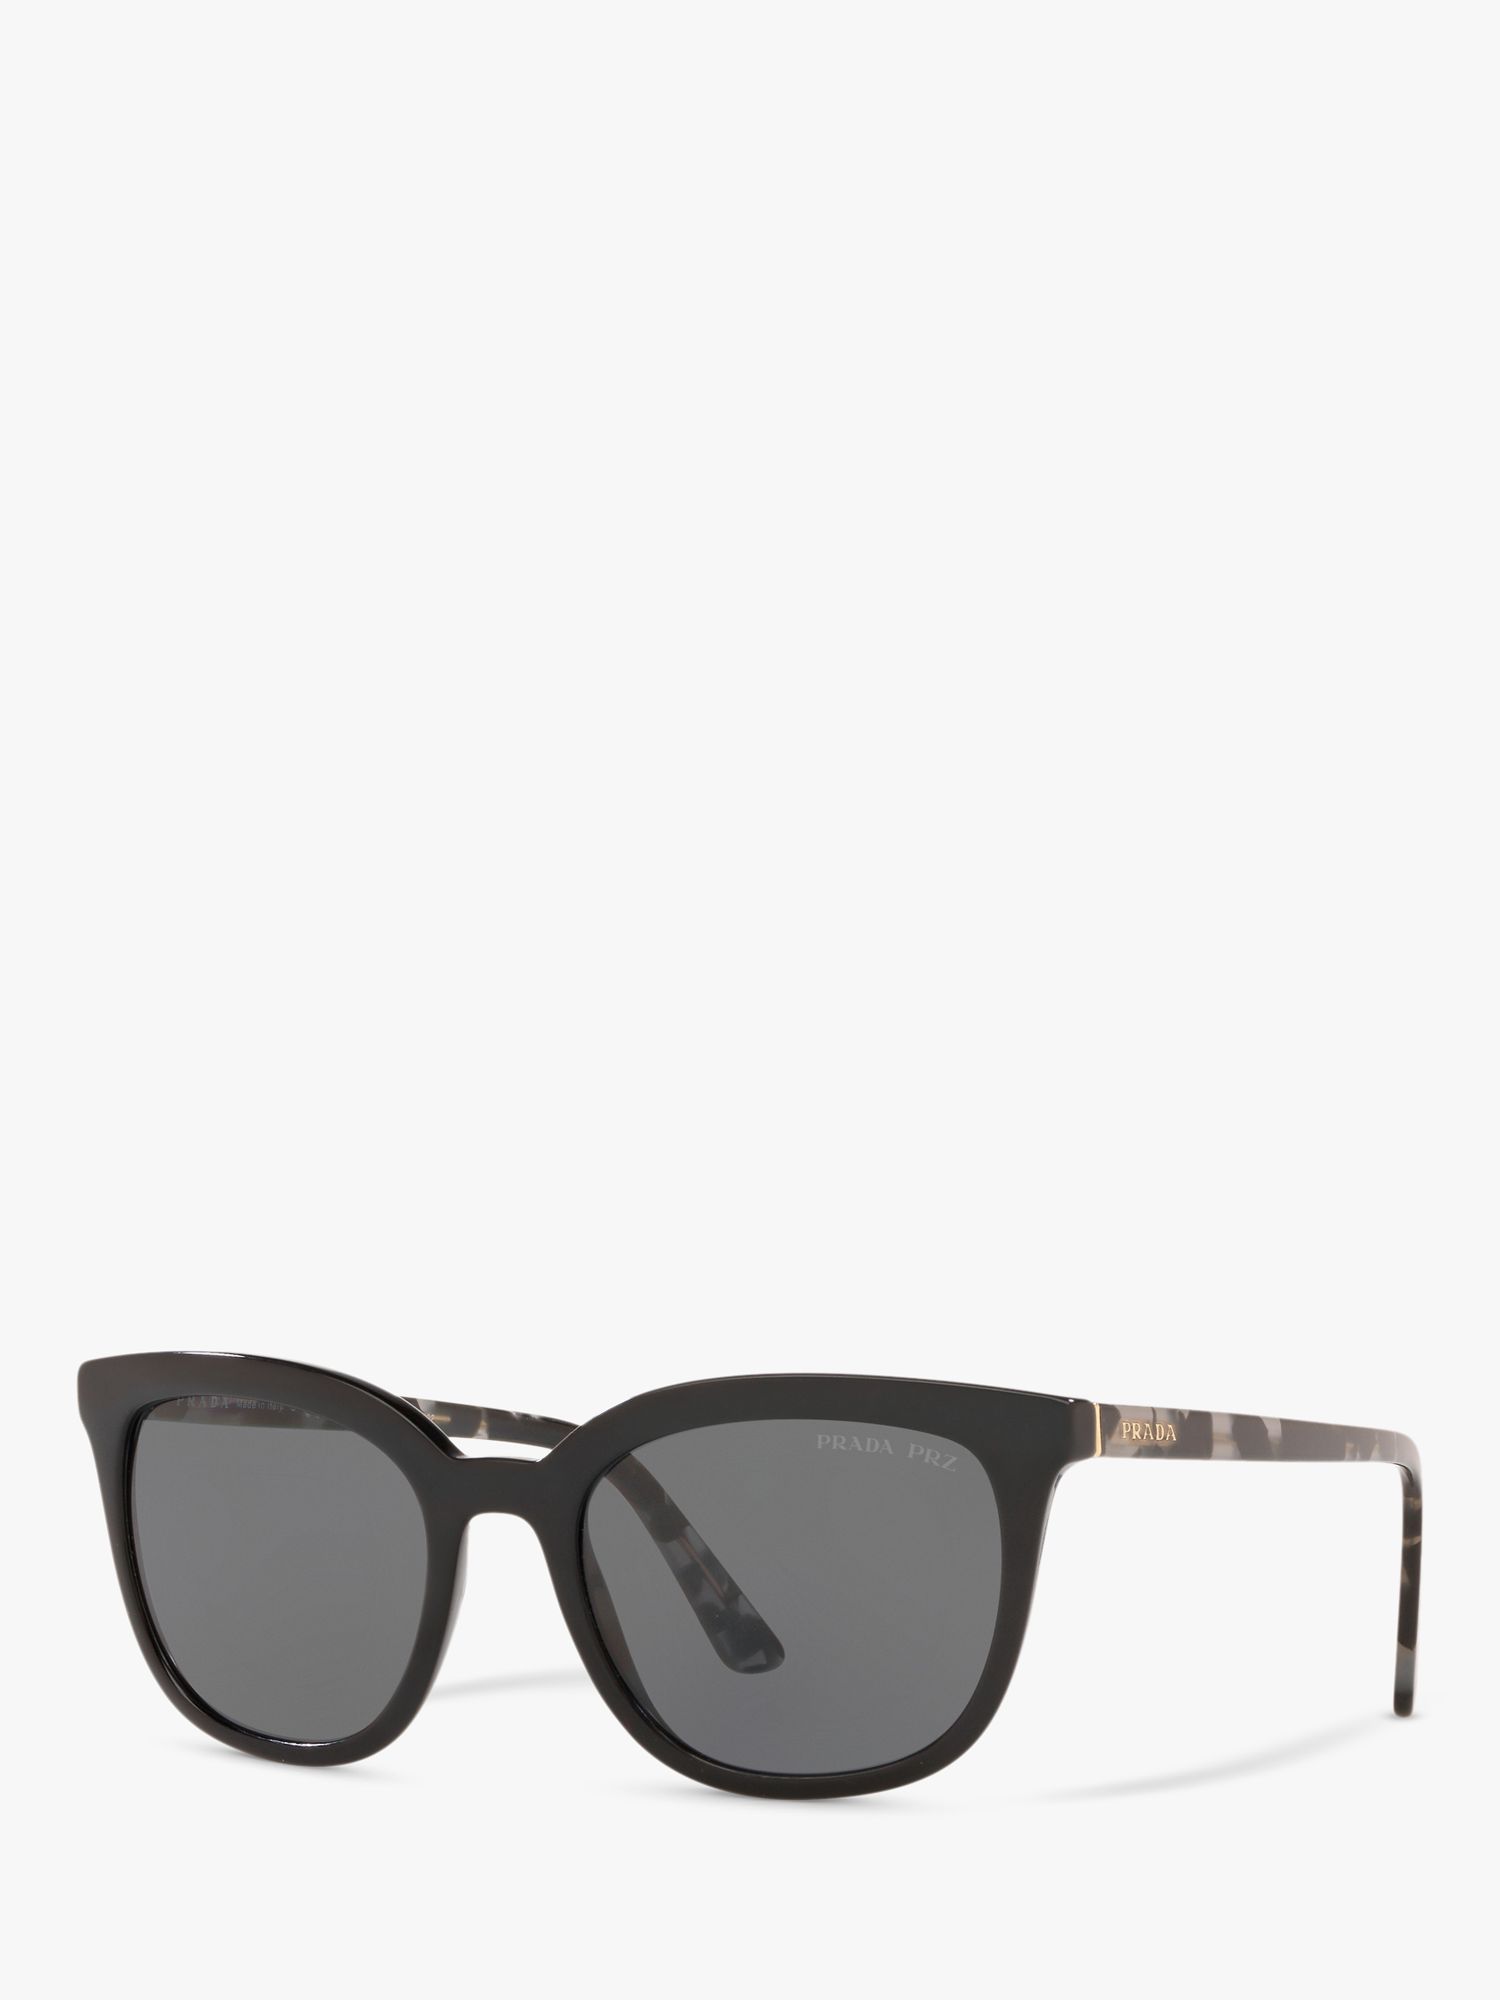 Prada PR 03XS Polarised Pillow Sunglasses, Black